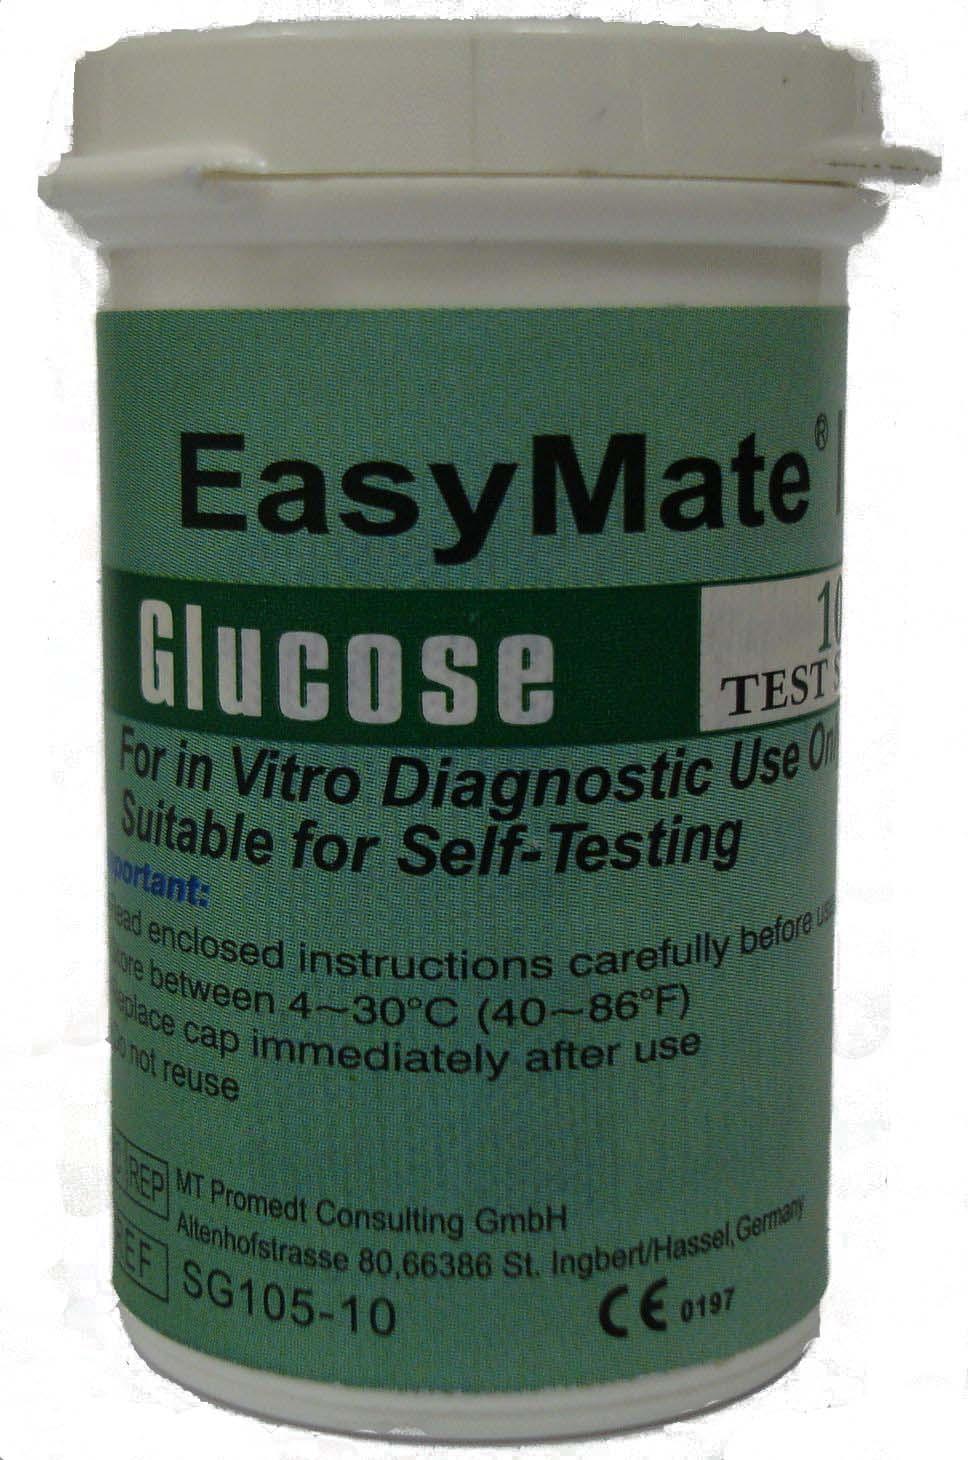  teste glicemie easymate gc